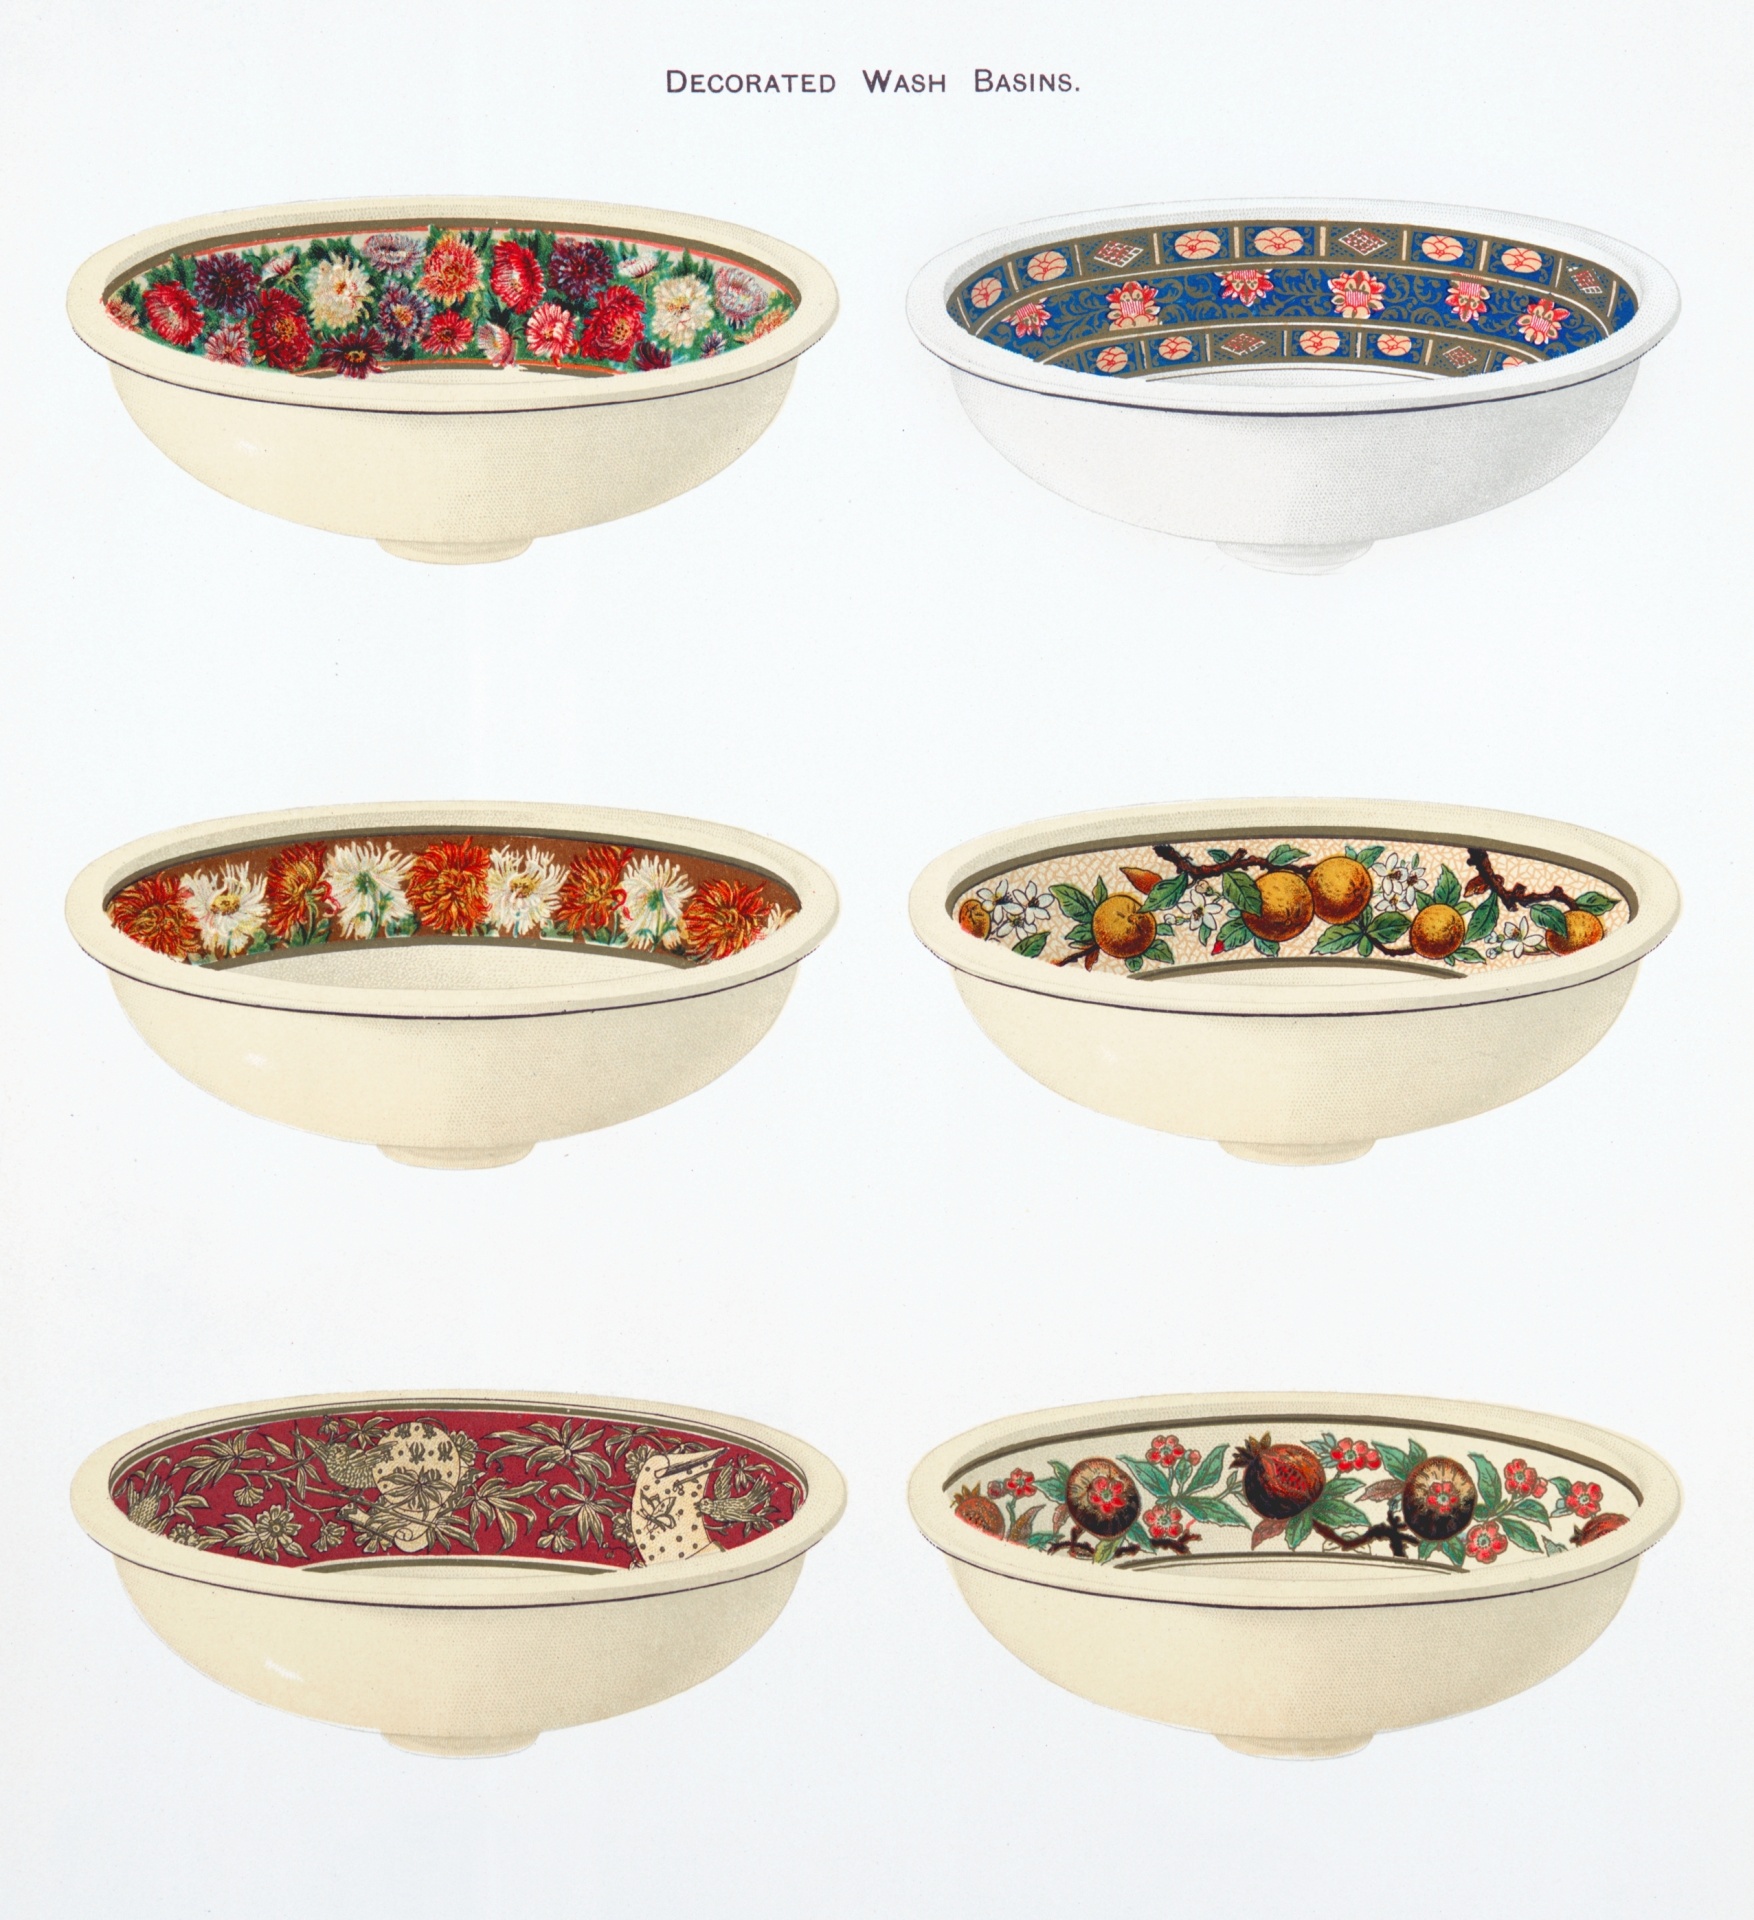 Washing Bowl Vintage Ceramic